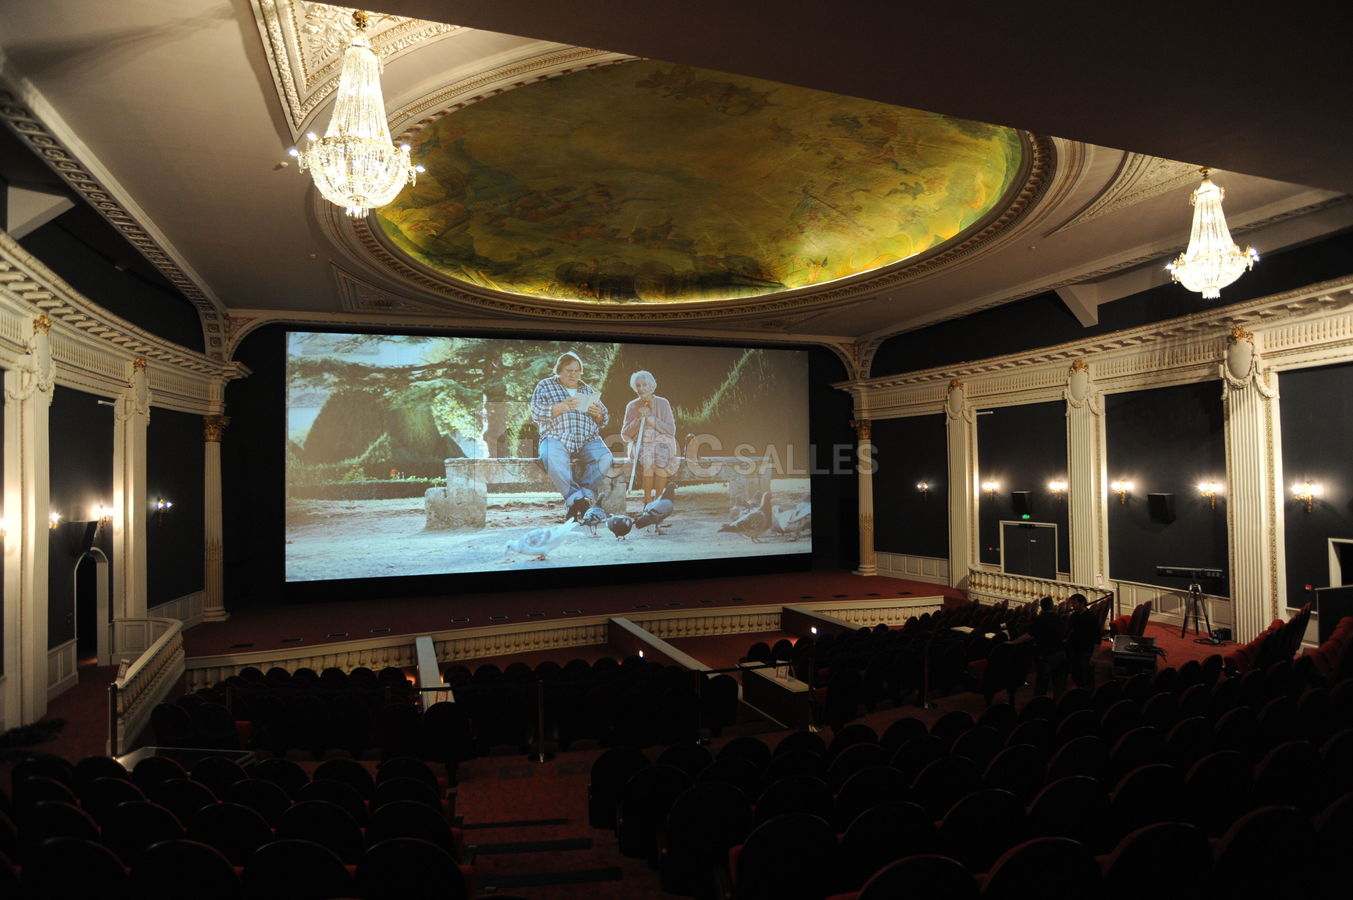 Cinéma CGR Bordeaux Le Français (Bordeaux) : Événements et billets